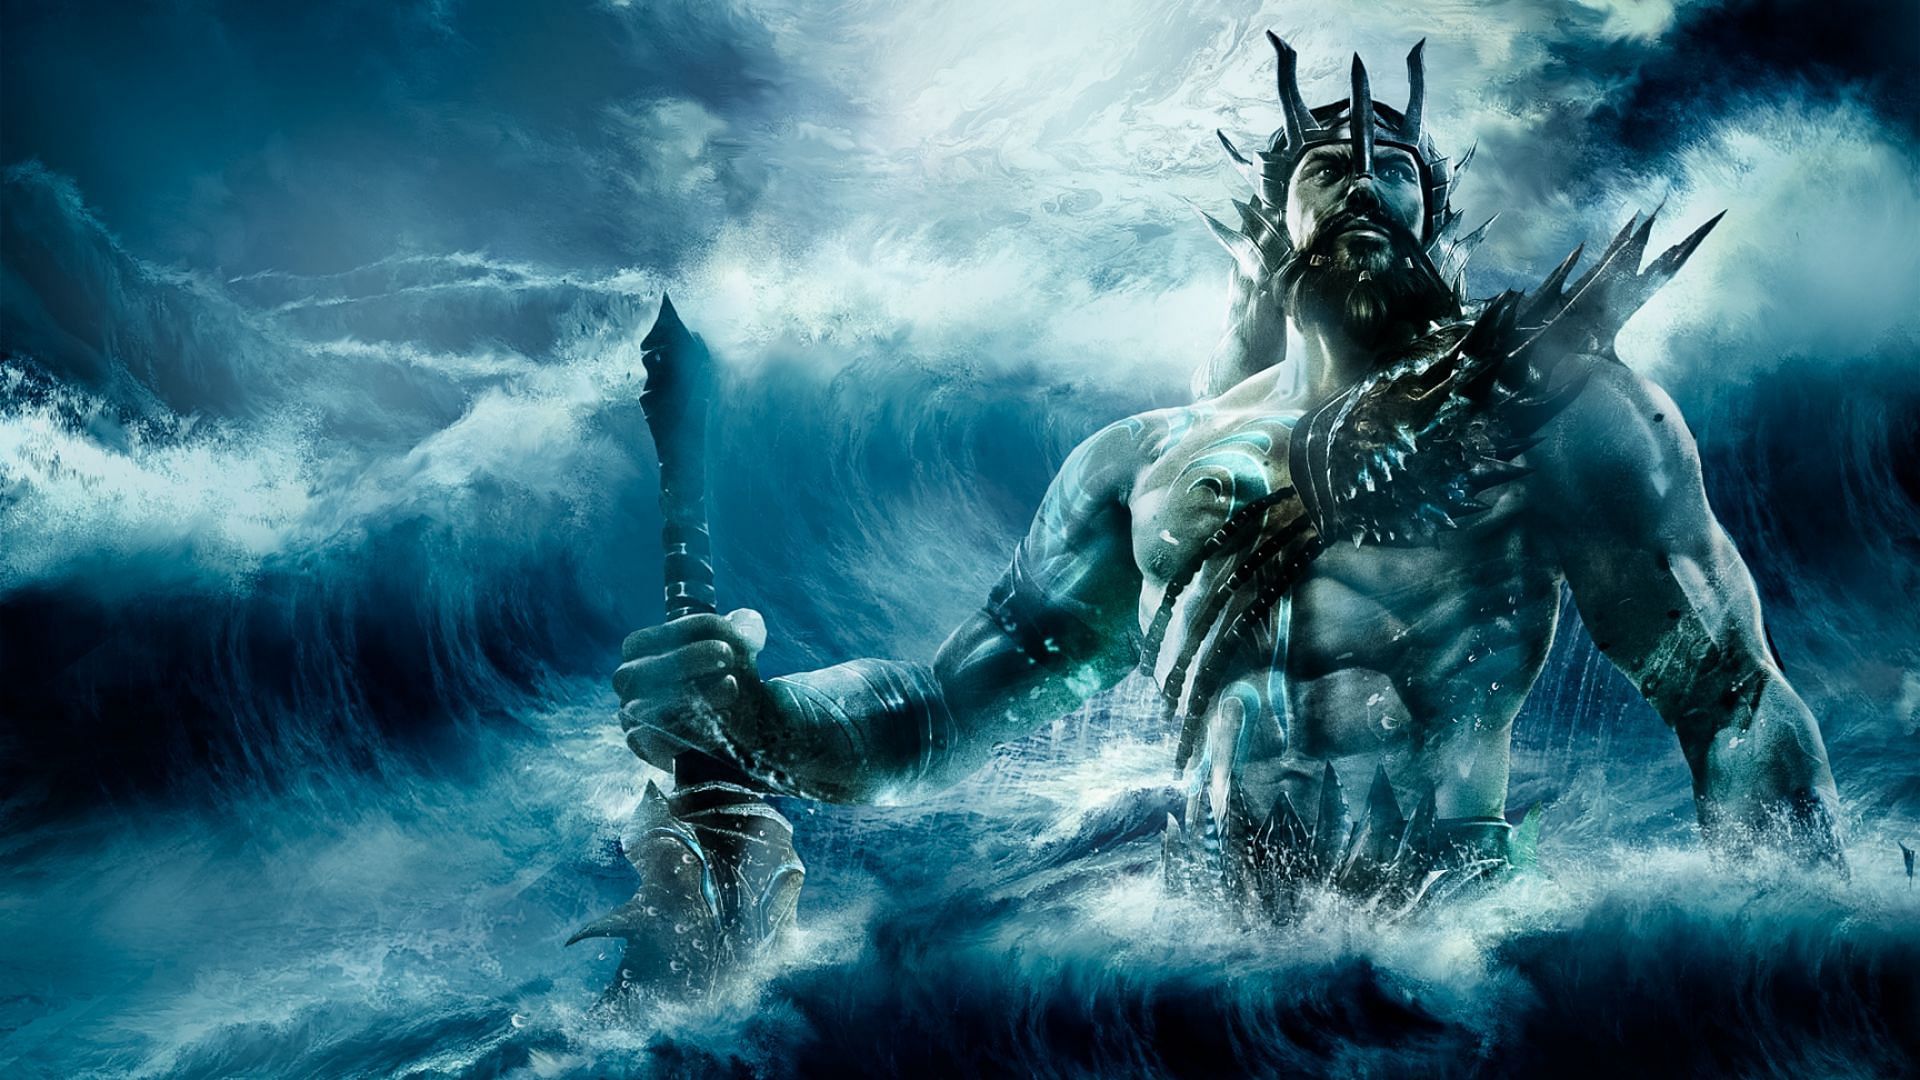 Poseidon (Image via Plugged In)